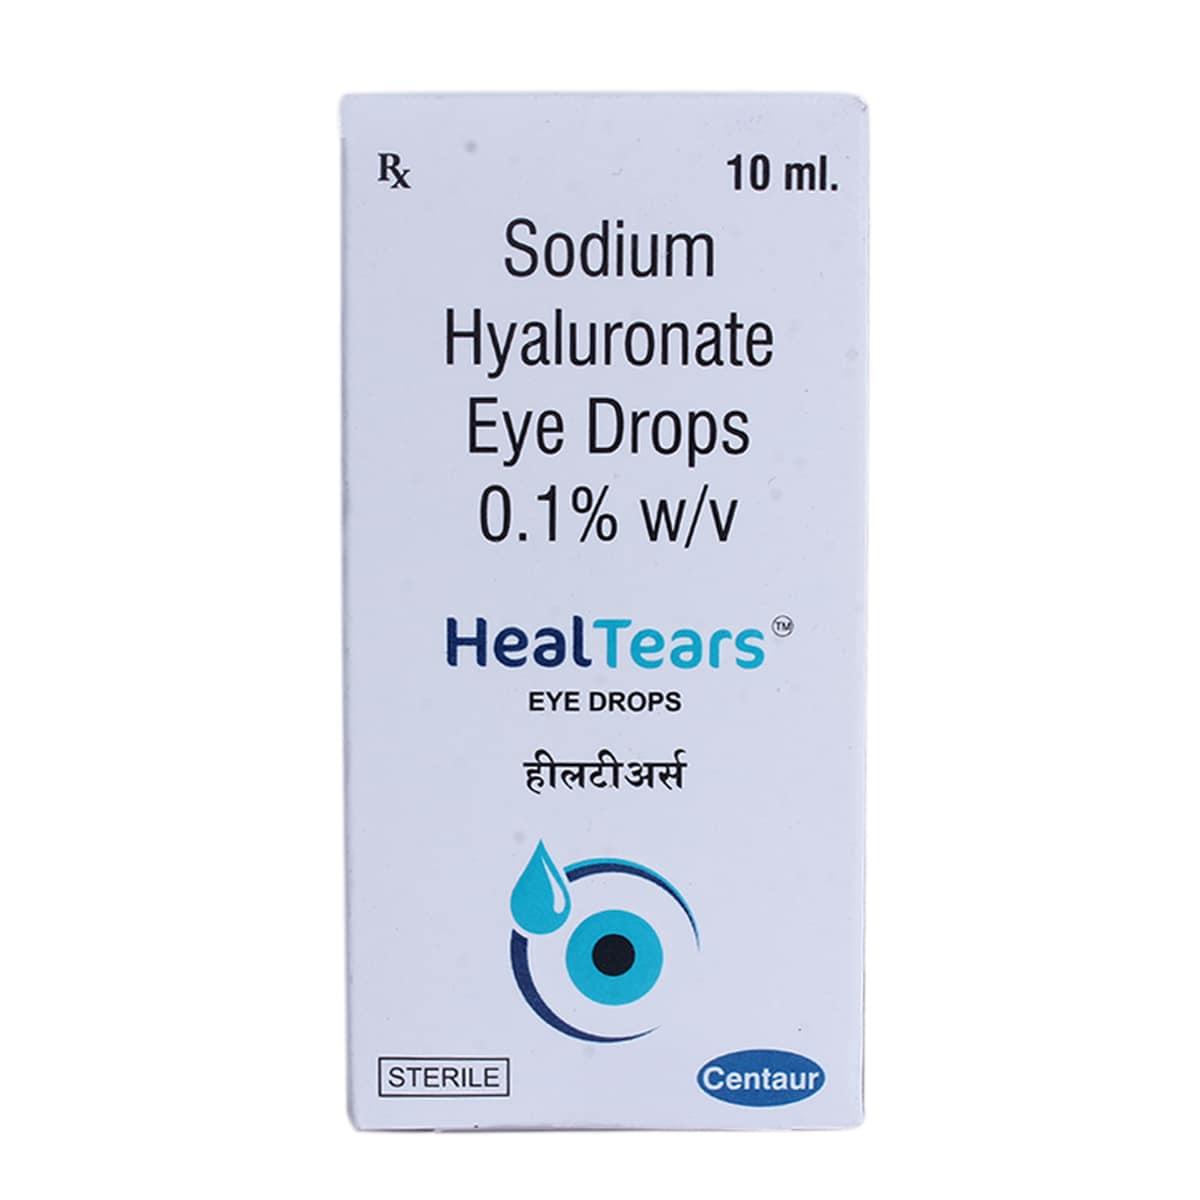 Buy HealTears Eye Drops 10 ml Online